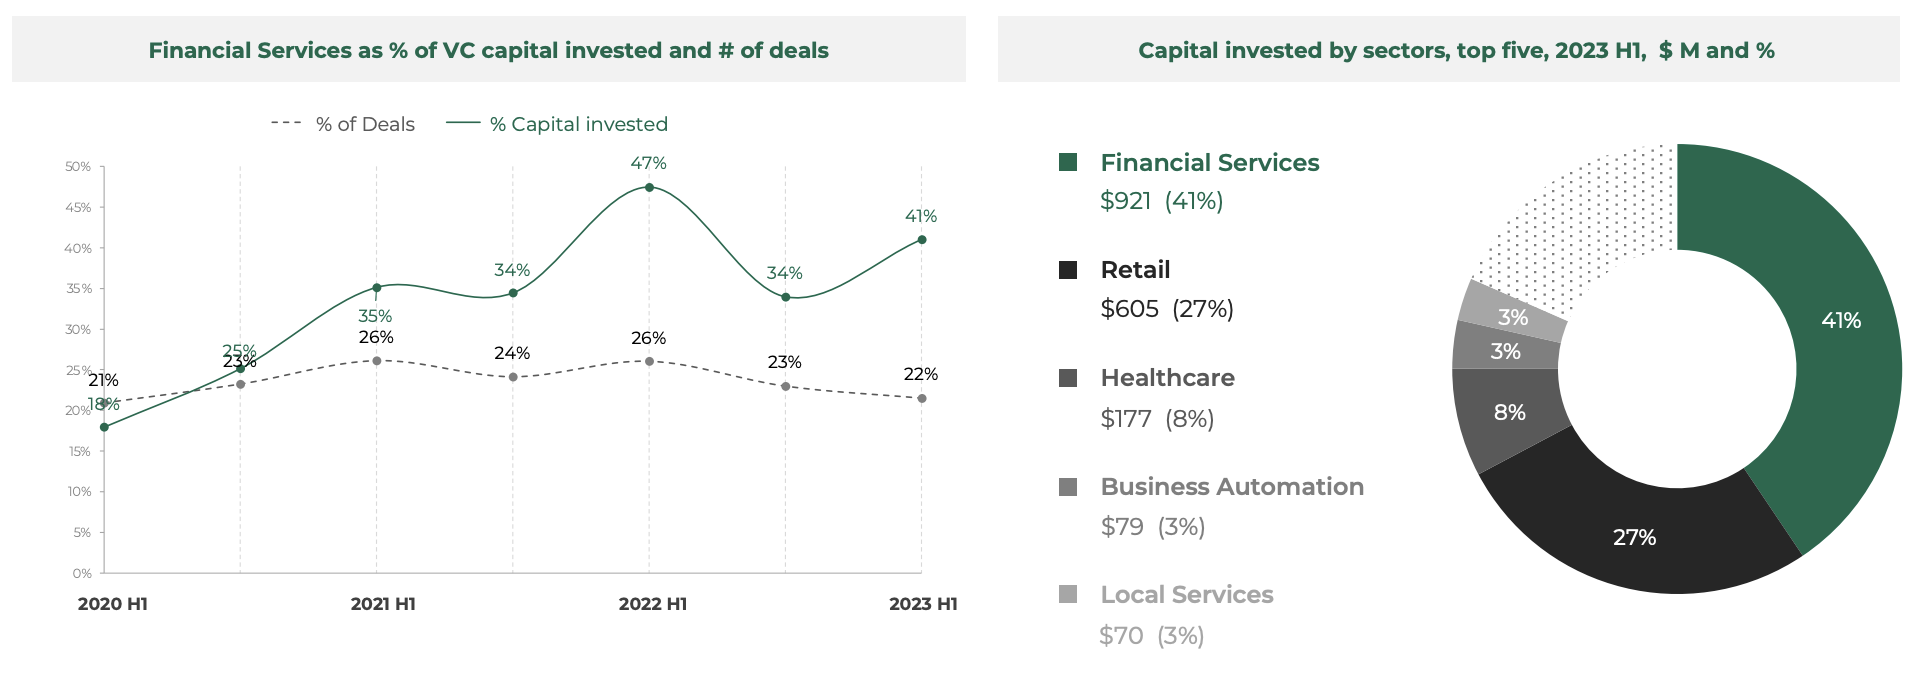 金融服务占风险投资资本投资百分比和交易数量，来源：东南亚科技投资 2023 年上半年，Cento Ventures，1 年 2023 月